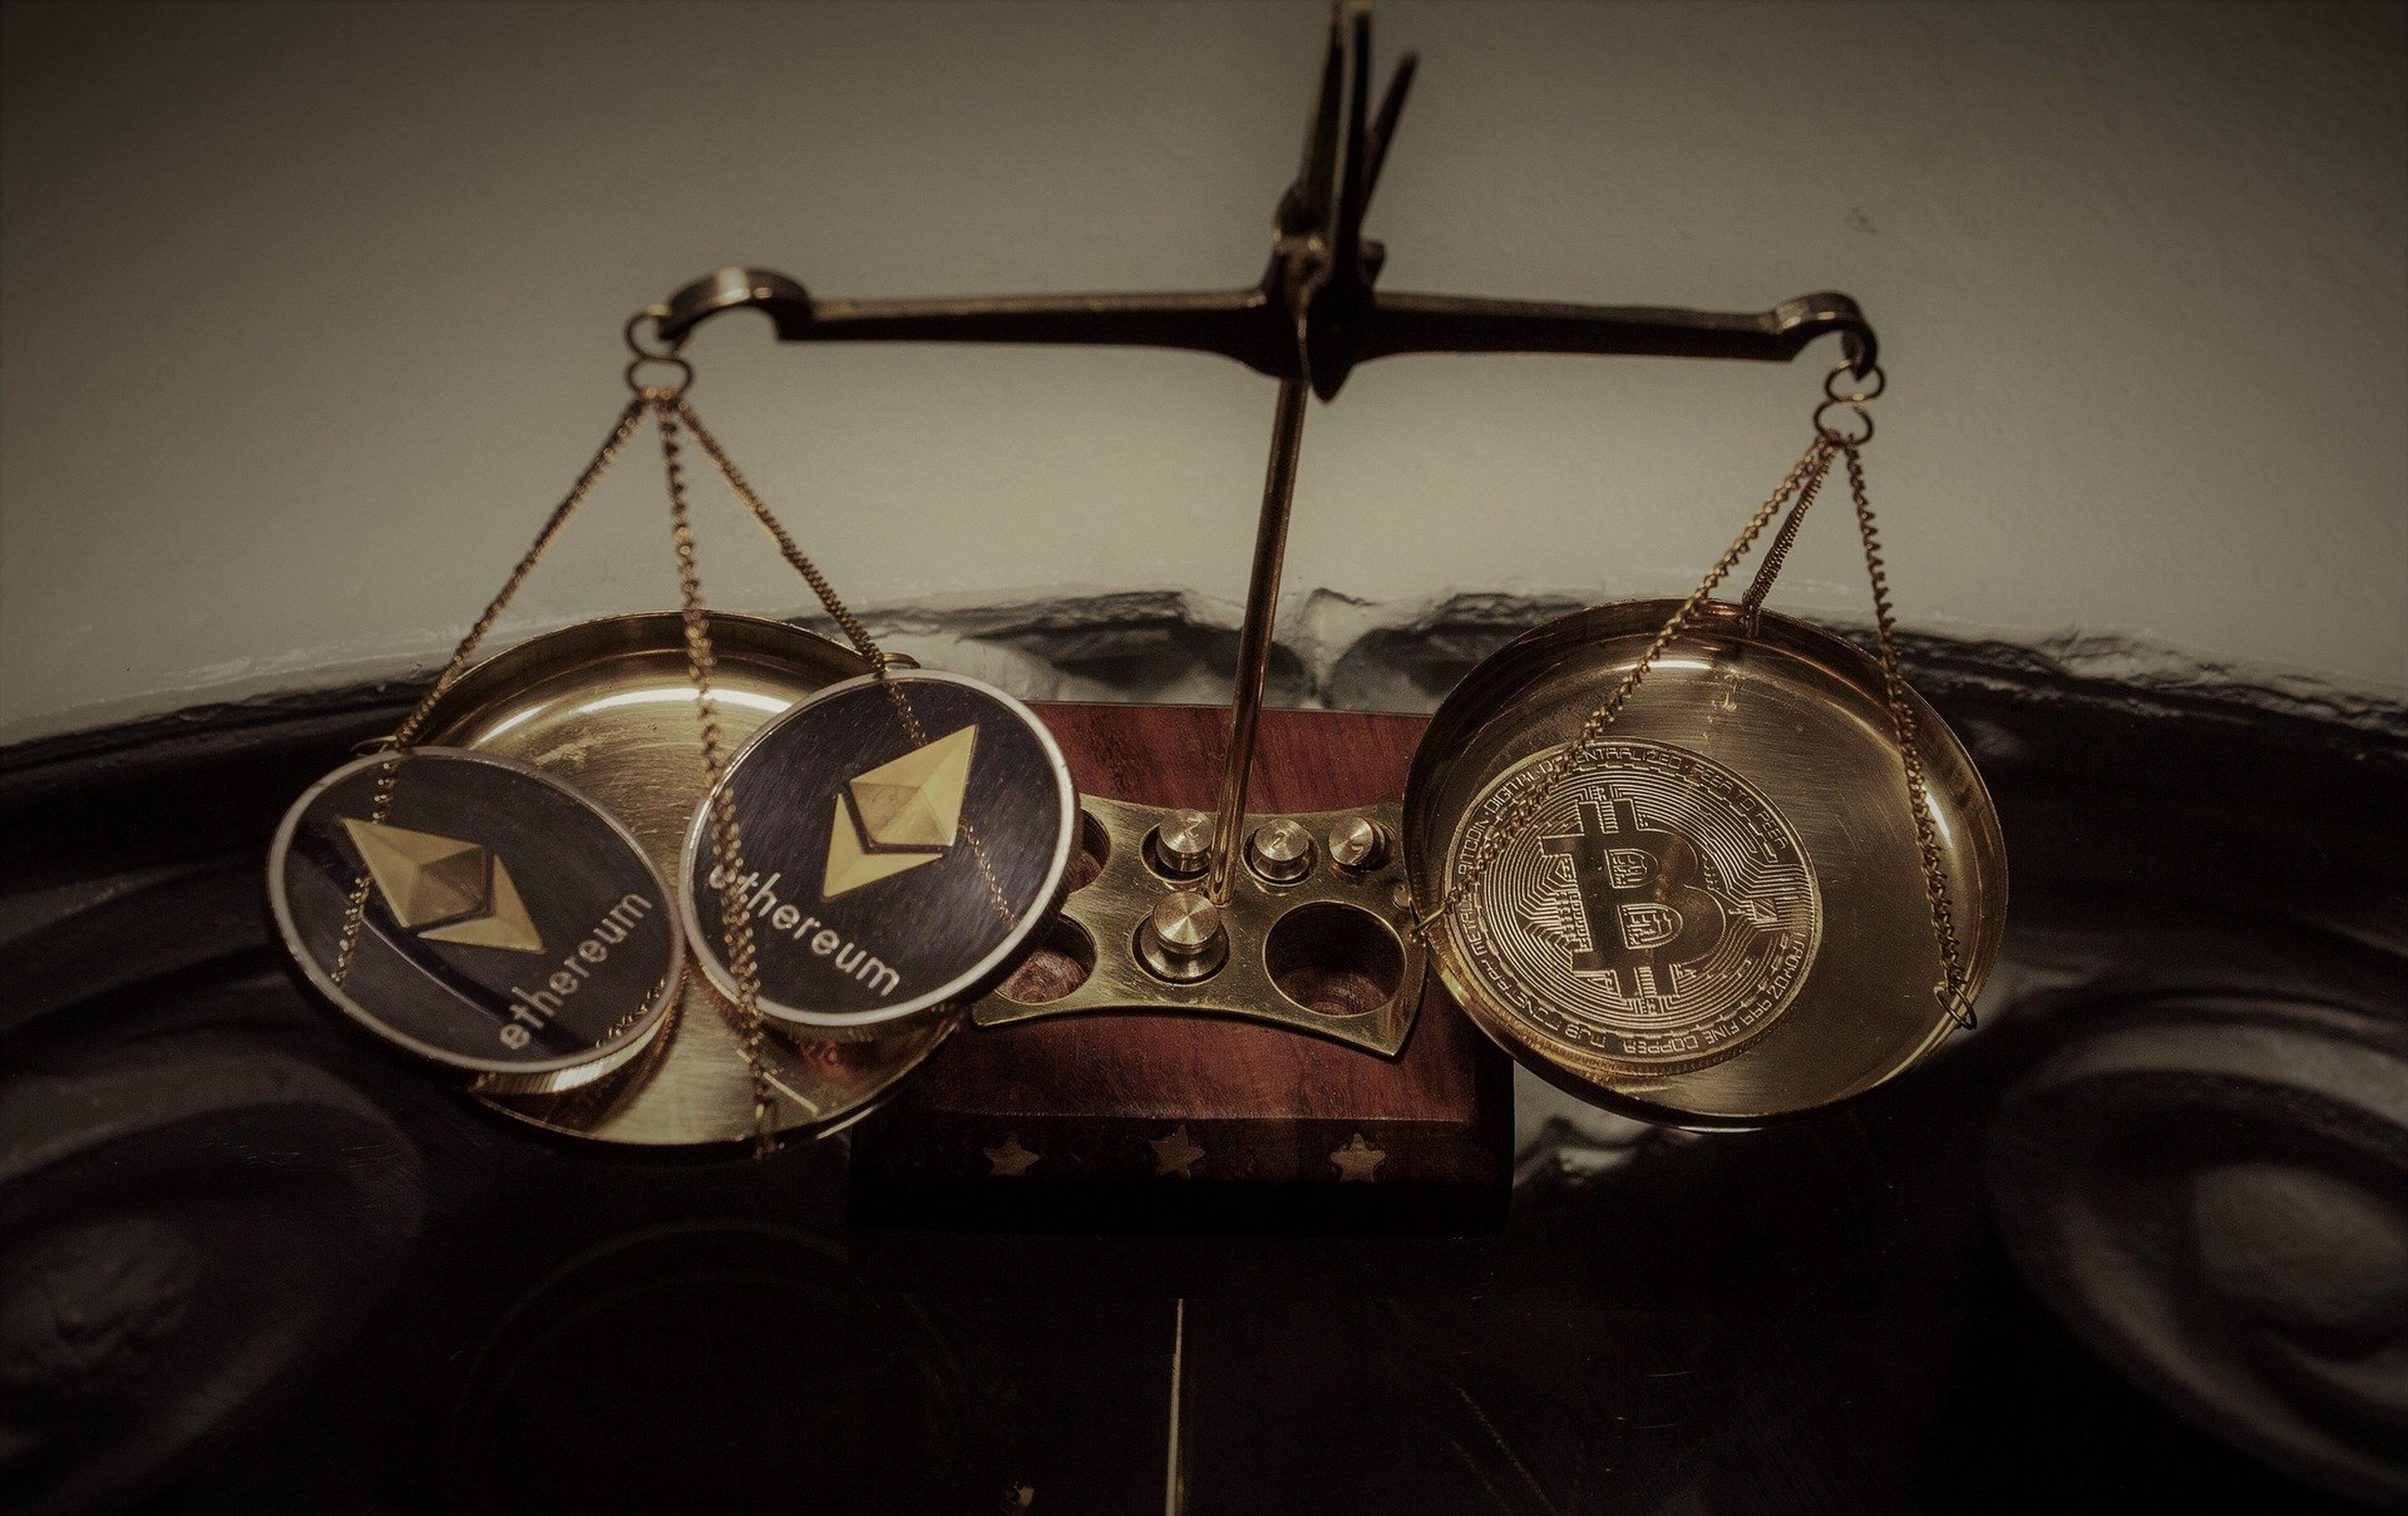 2 monedas de ethereum y una de bitcoin en una balanza.